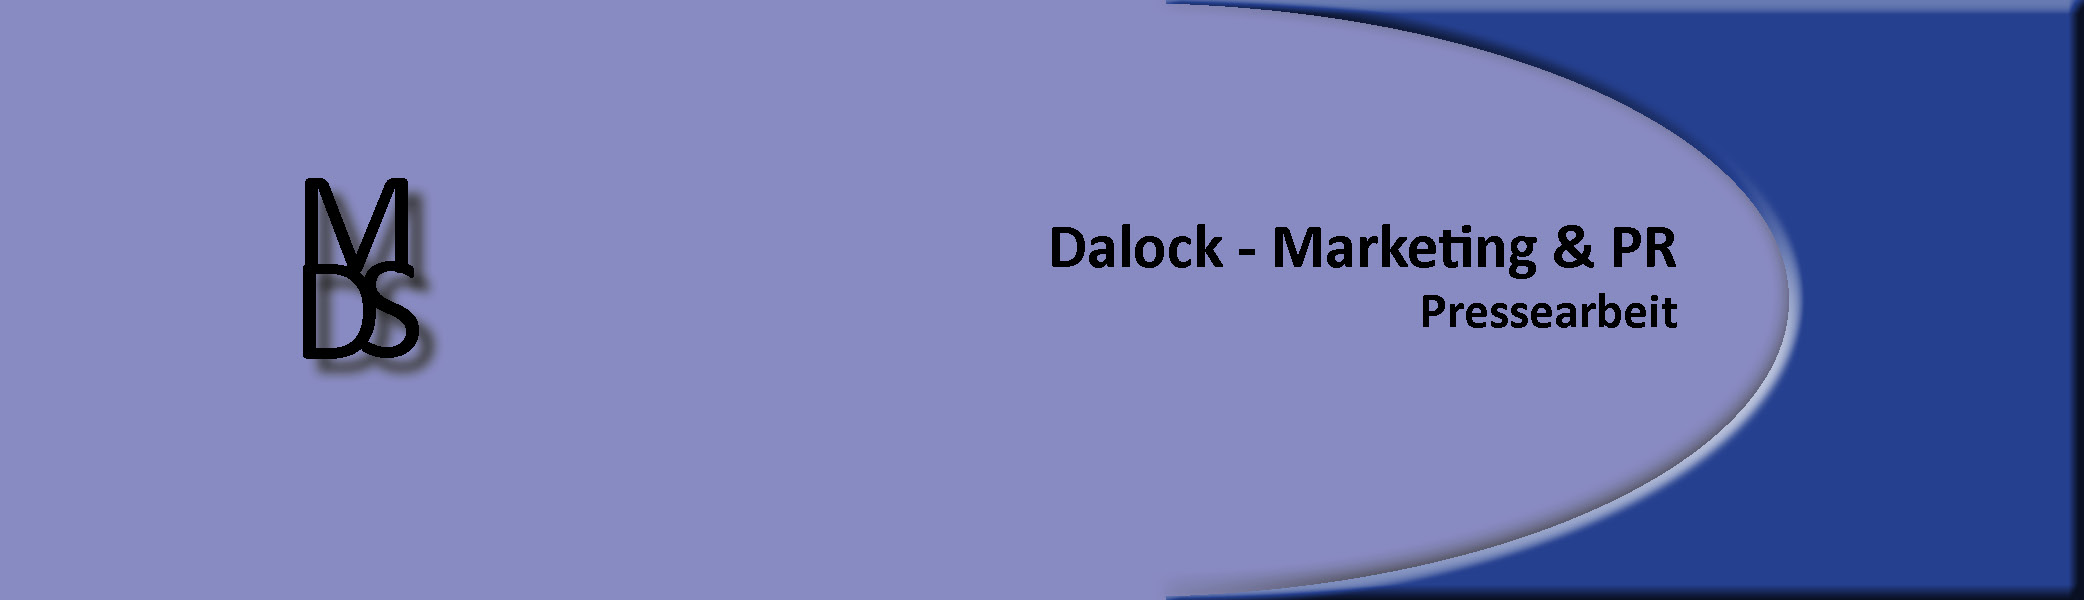 Dalock Marketing Pressearbeit